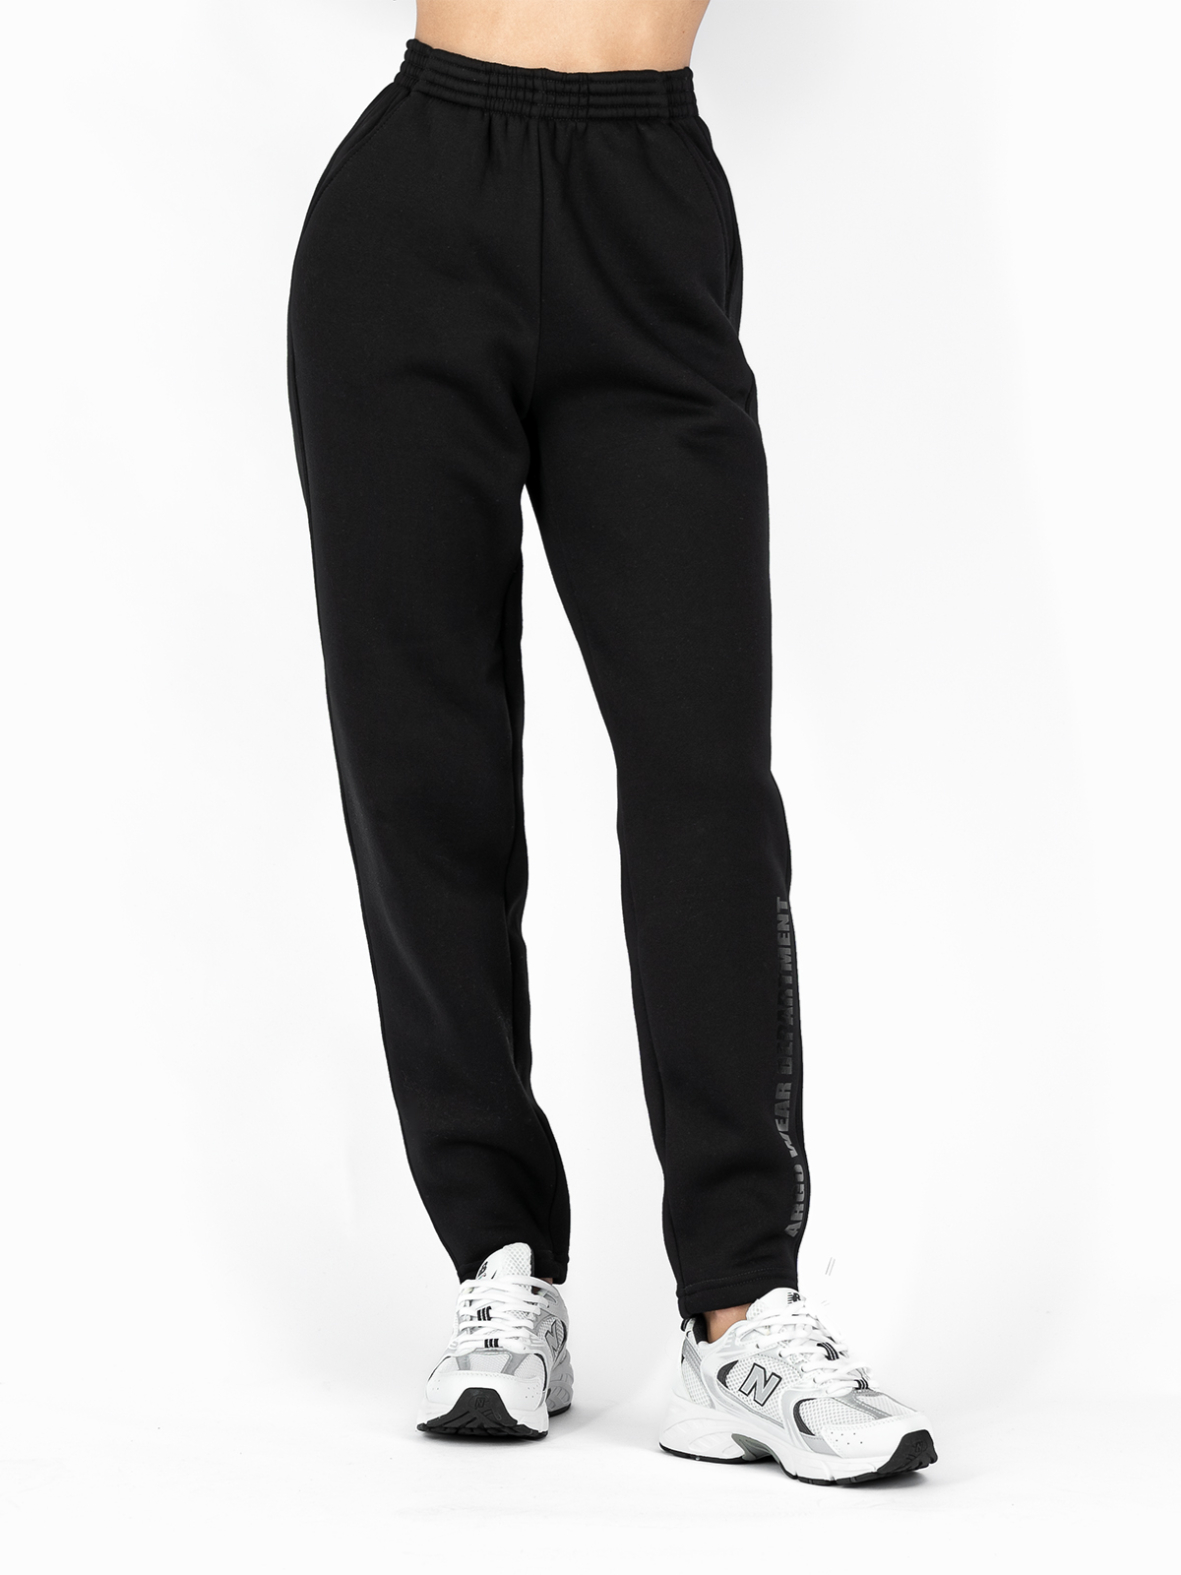 Спортивные брюки женские Argo Classic B412 черные 44 RU